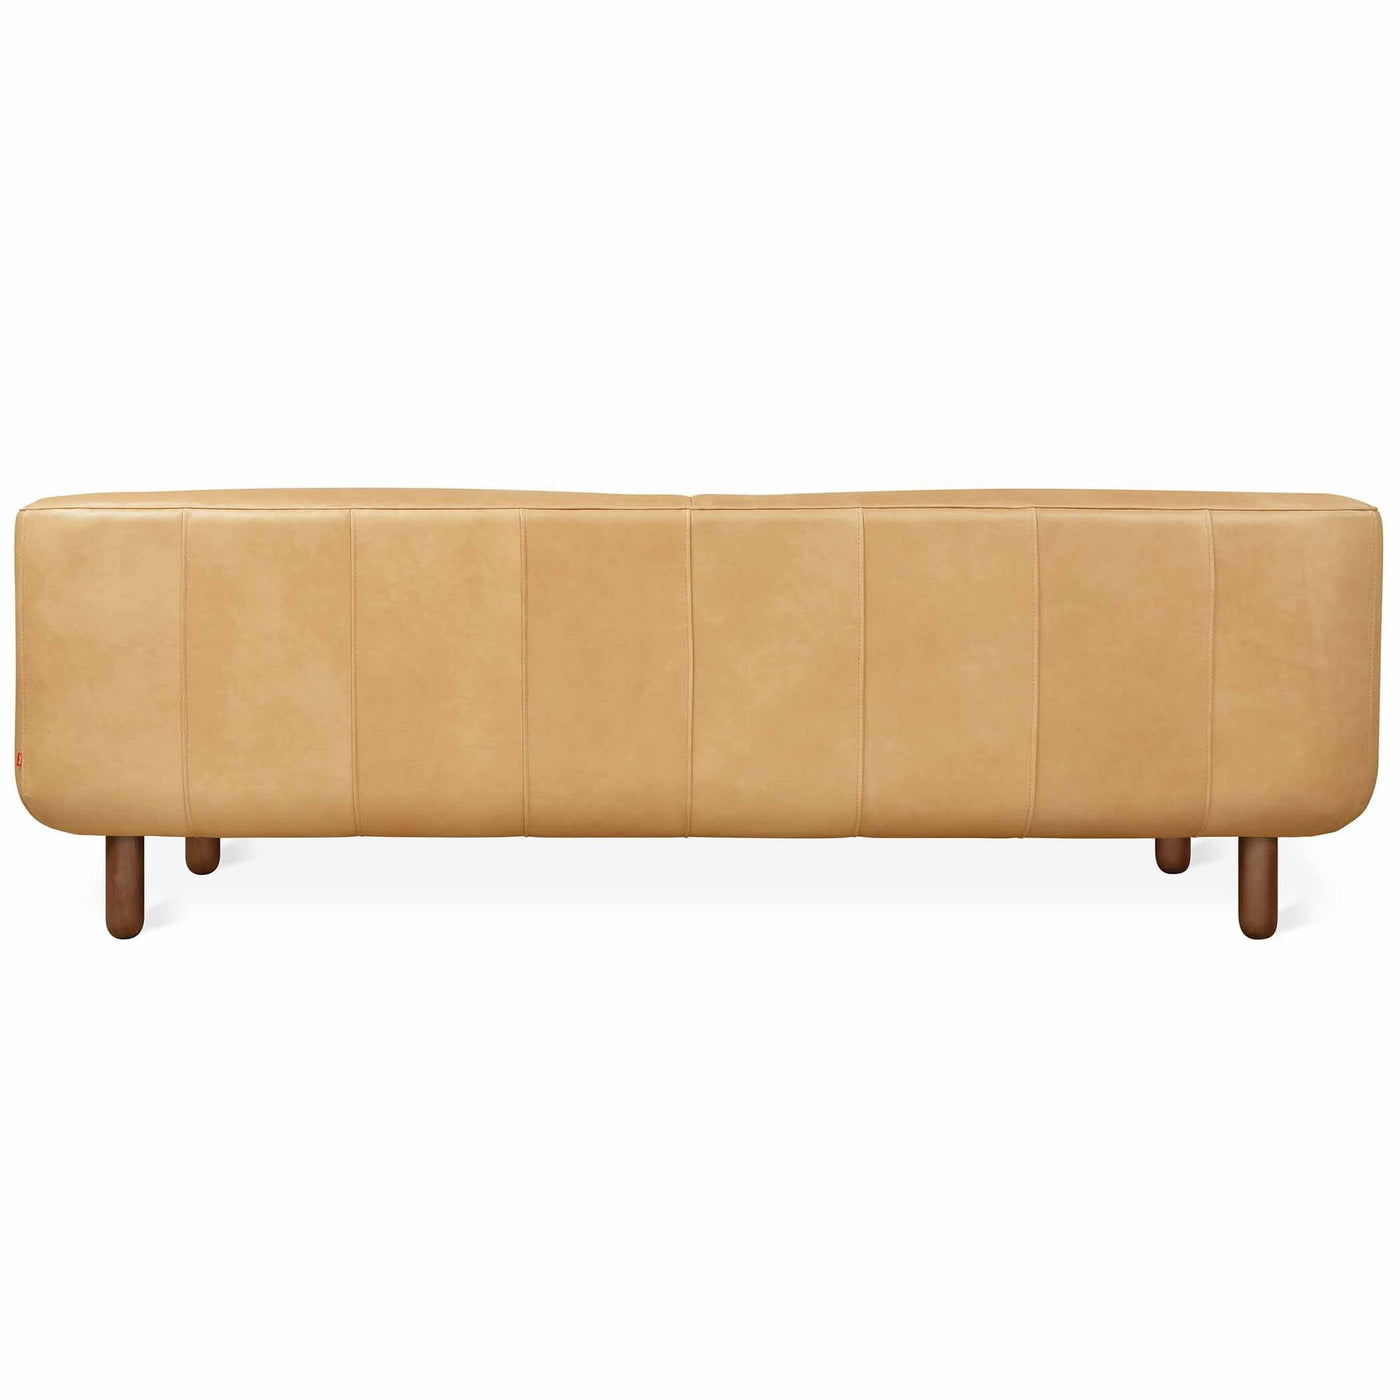 Beaconsfield de Gus* Modern : un sofa qui marie habilement tradition et modernité, offrant un luxe intemporel et un confort supérieur dans un cadre élégant et enveloppant.